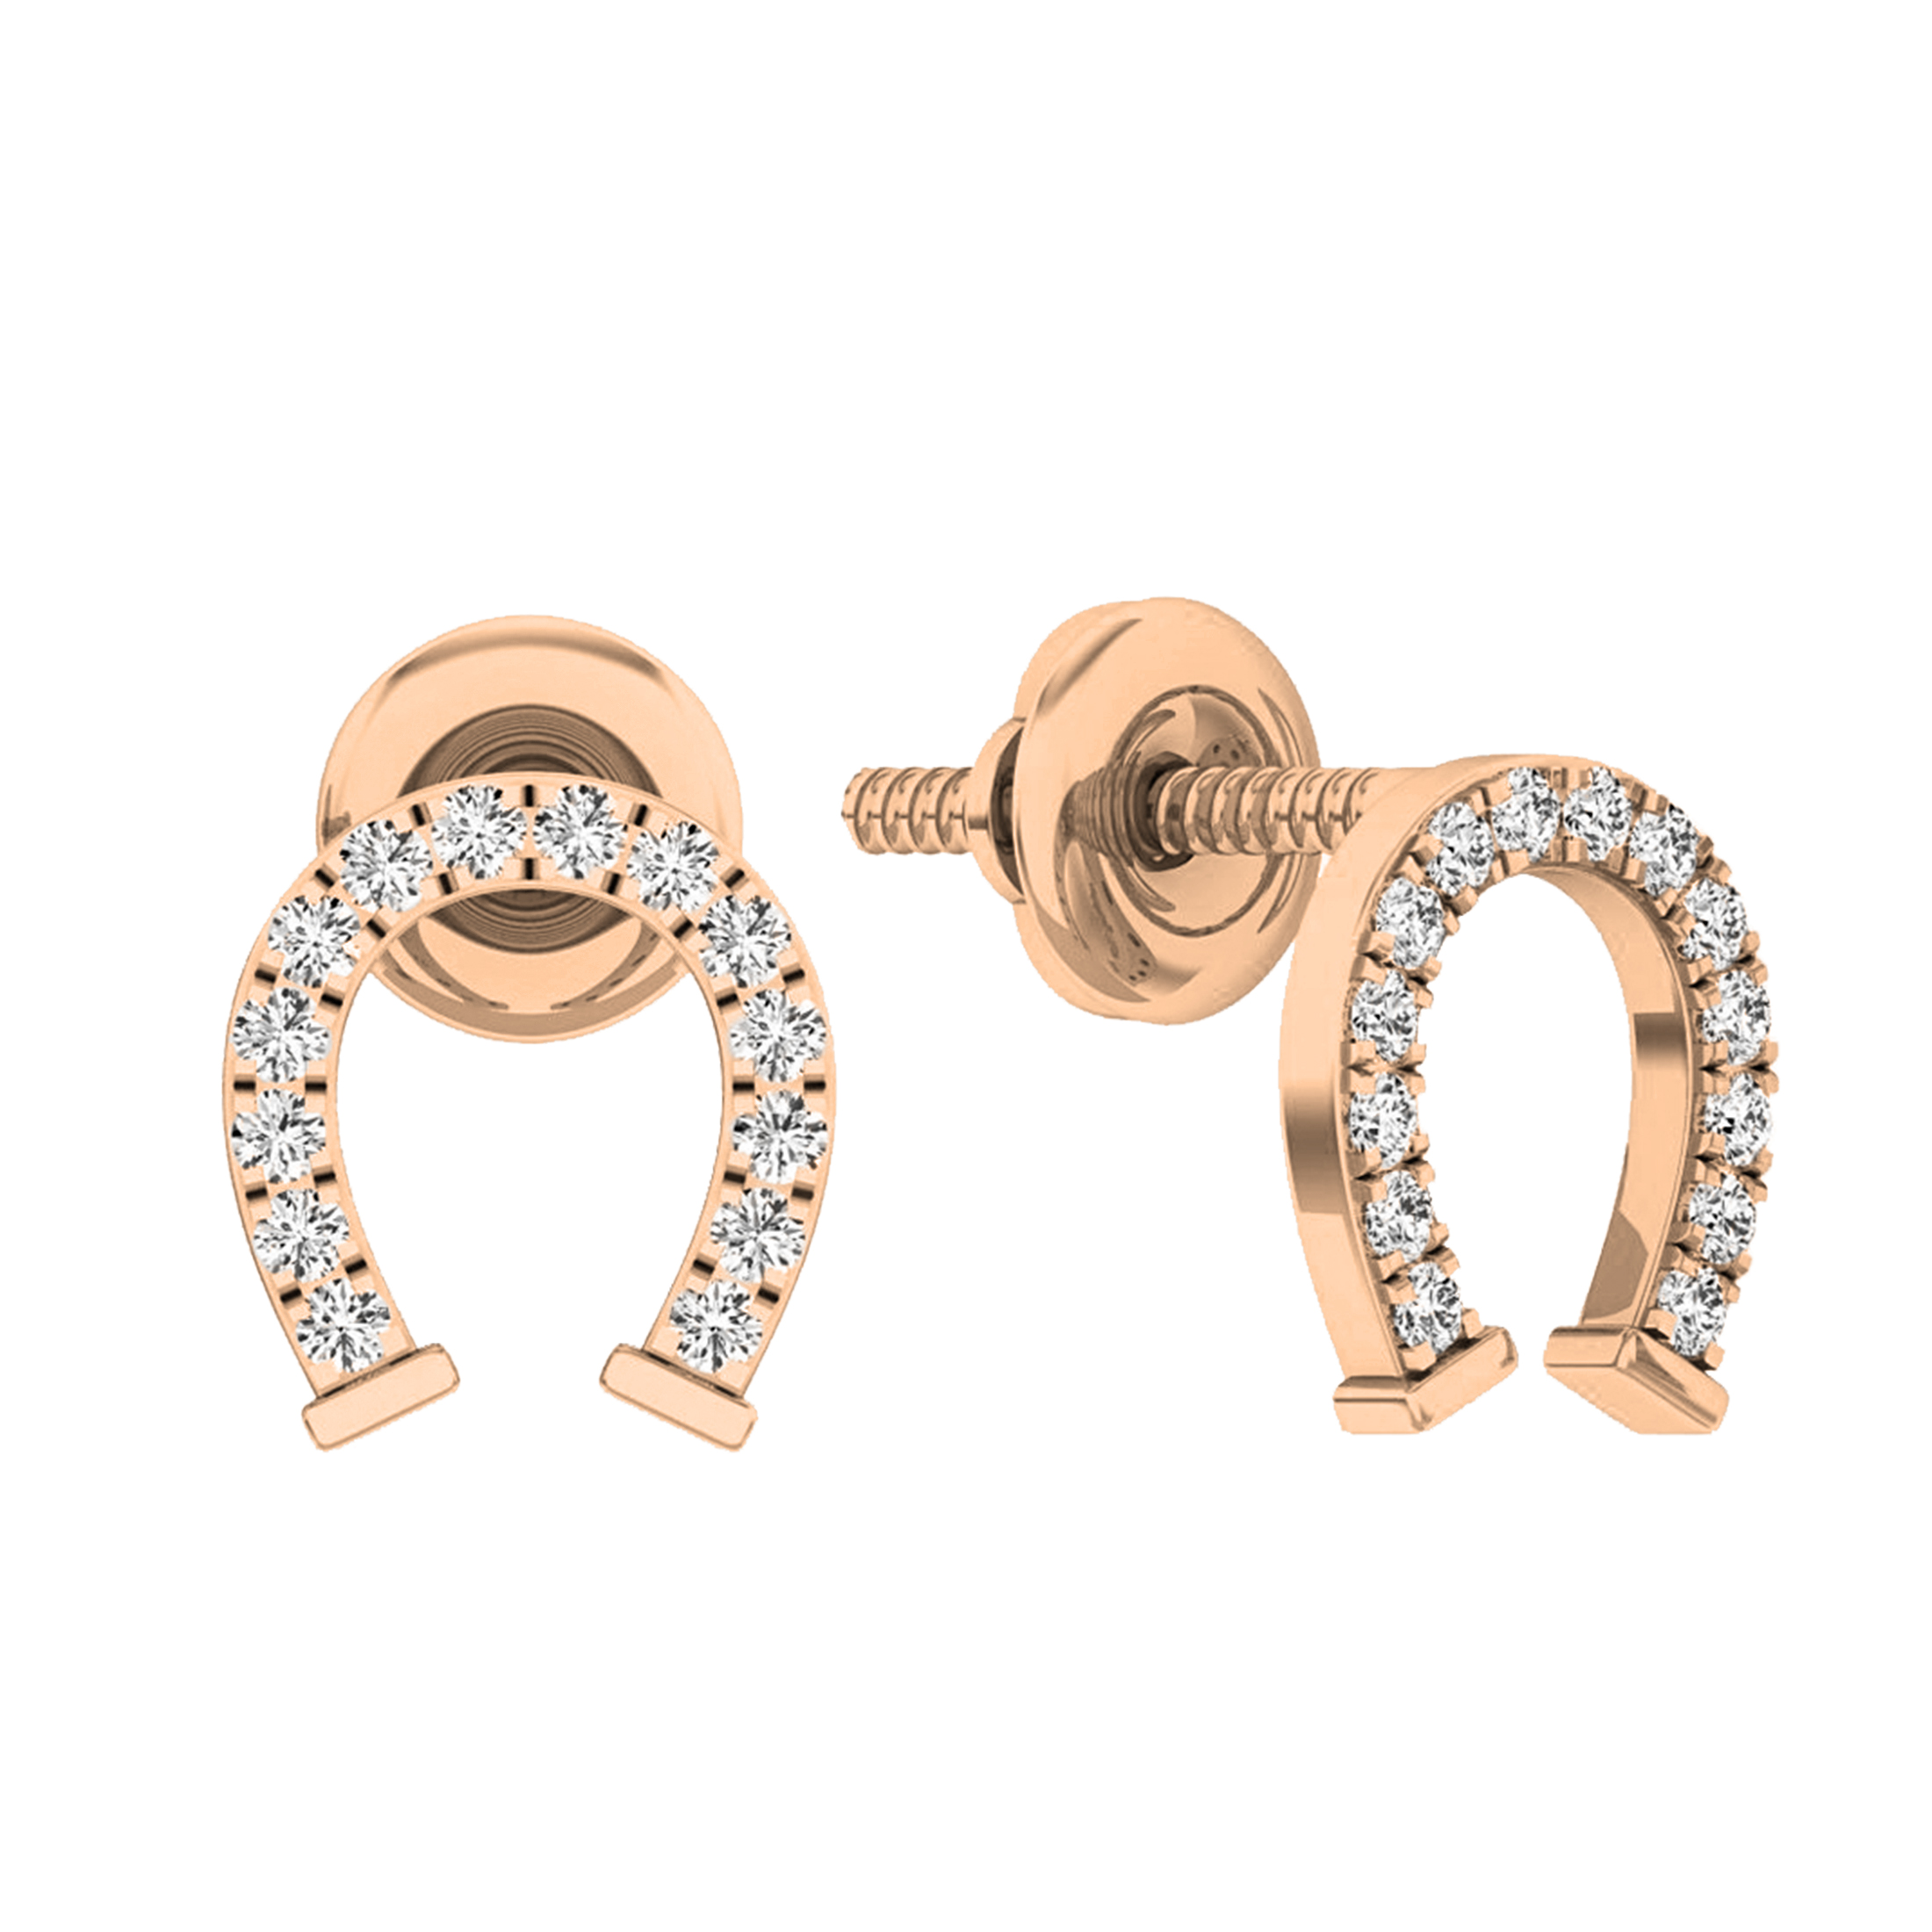 Buy 0.10 Carat (ctw) 10K Rose Gold Round Cut White Diamond Ladies